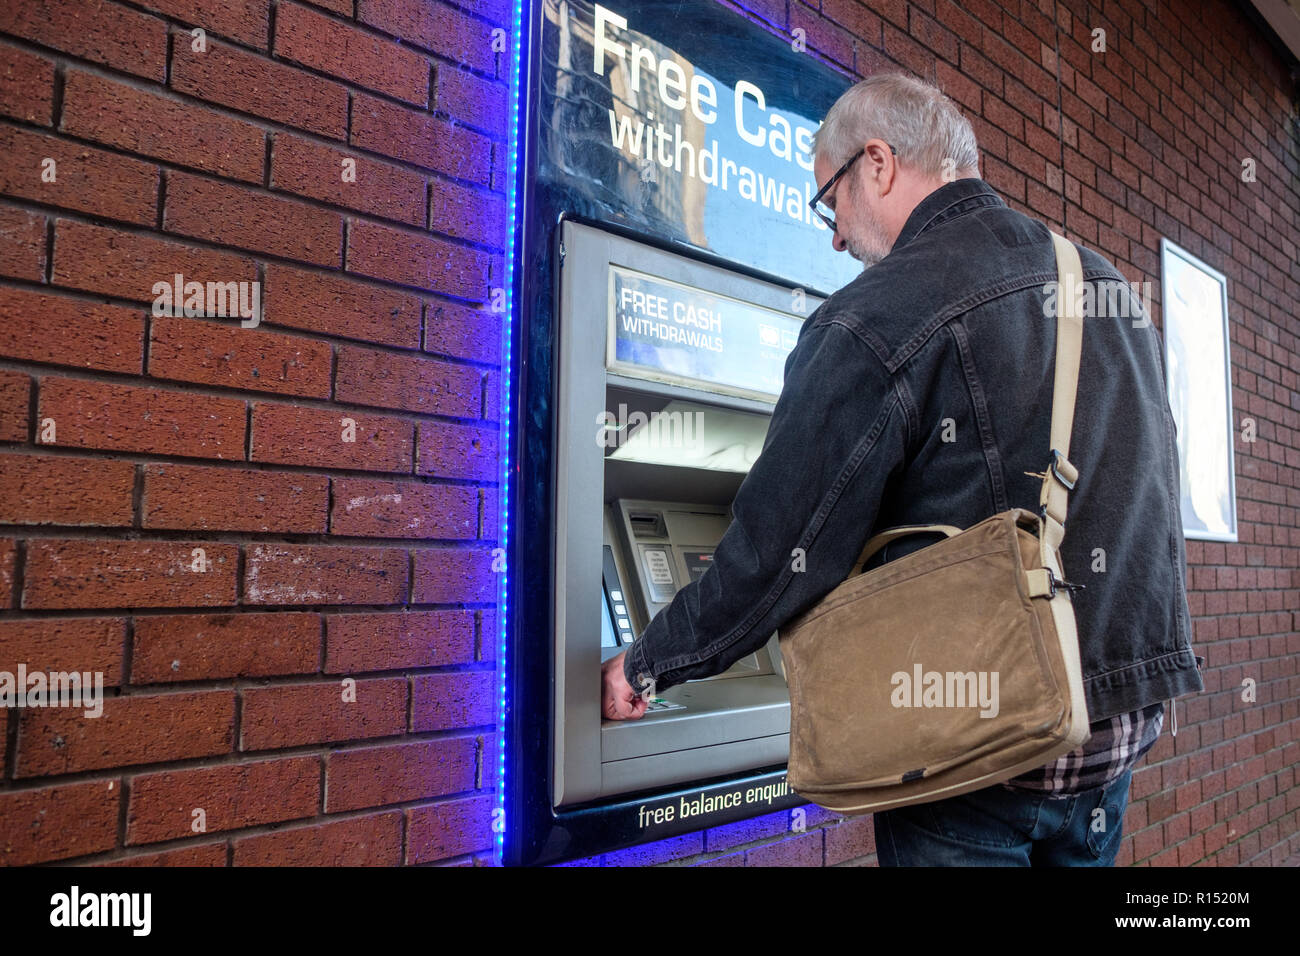 Schwedische Touristen macht eine Barauszahlung in Pfund von einem Geldautomaten in Leeds. Stockfoto